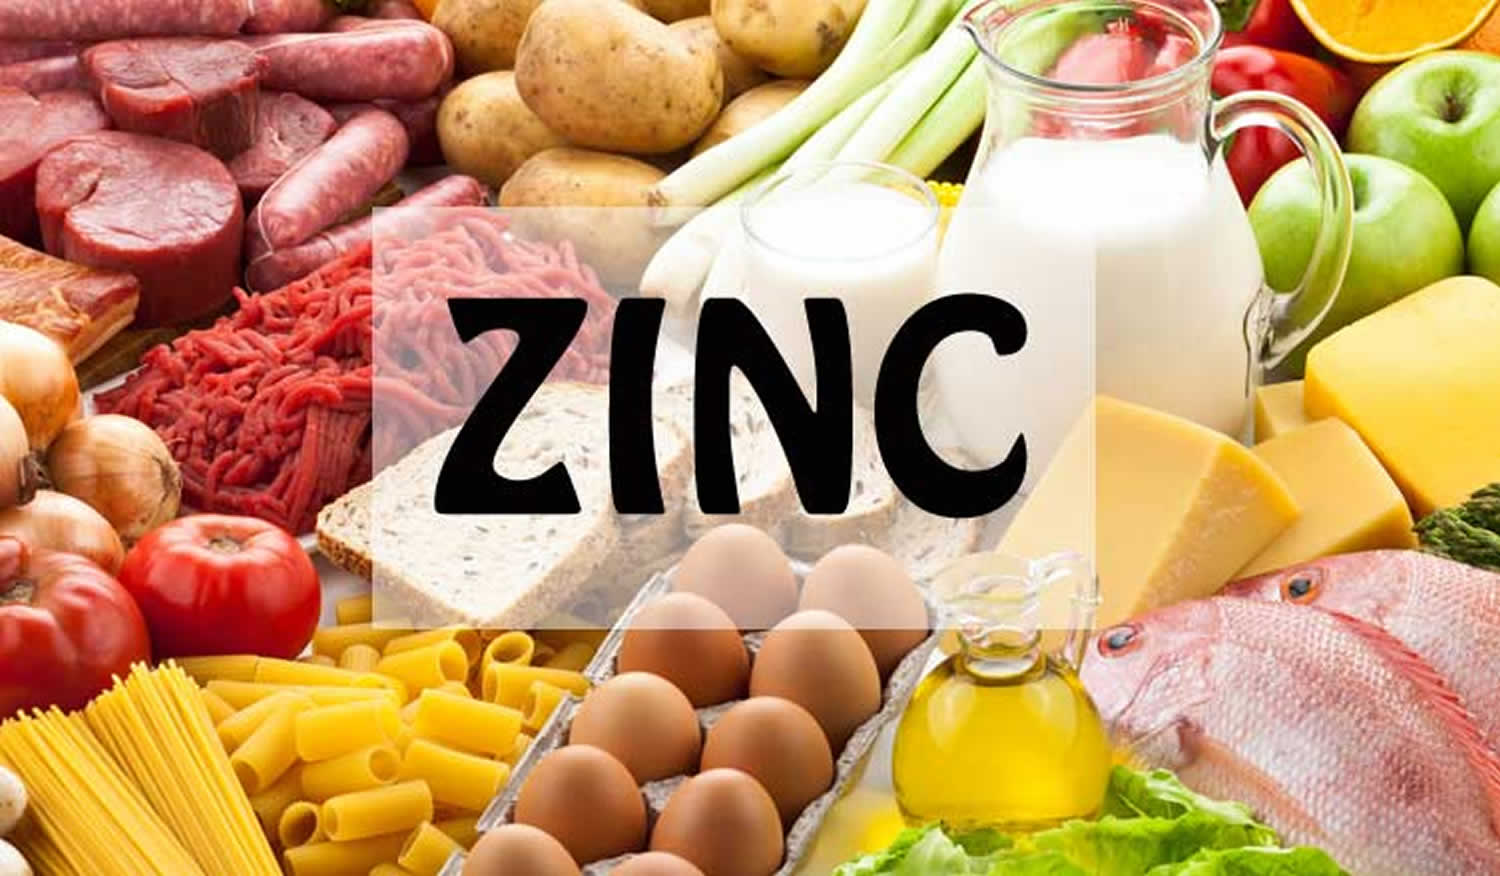 Benefits of Zinc